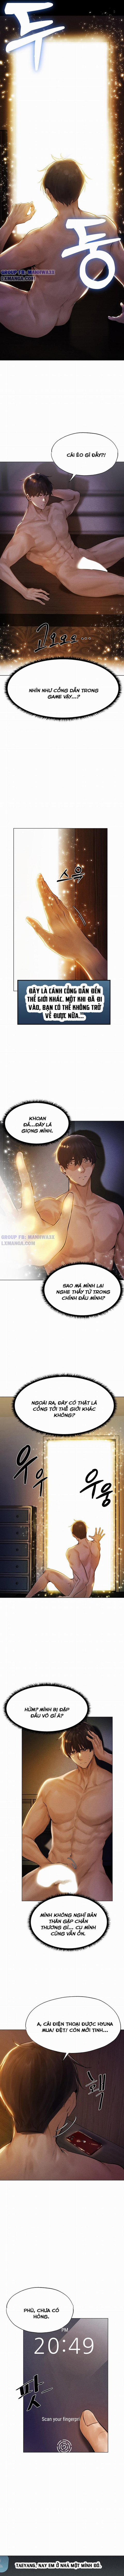 manhwazx.com - Truyện Manhwa Chinh phạt MILF ở thế giới khác Chương 1 Trang 8